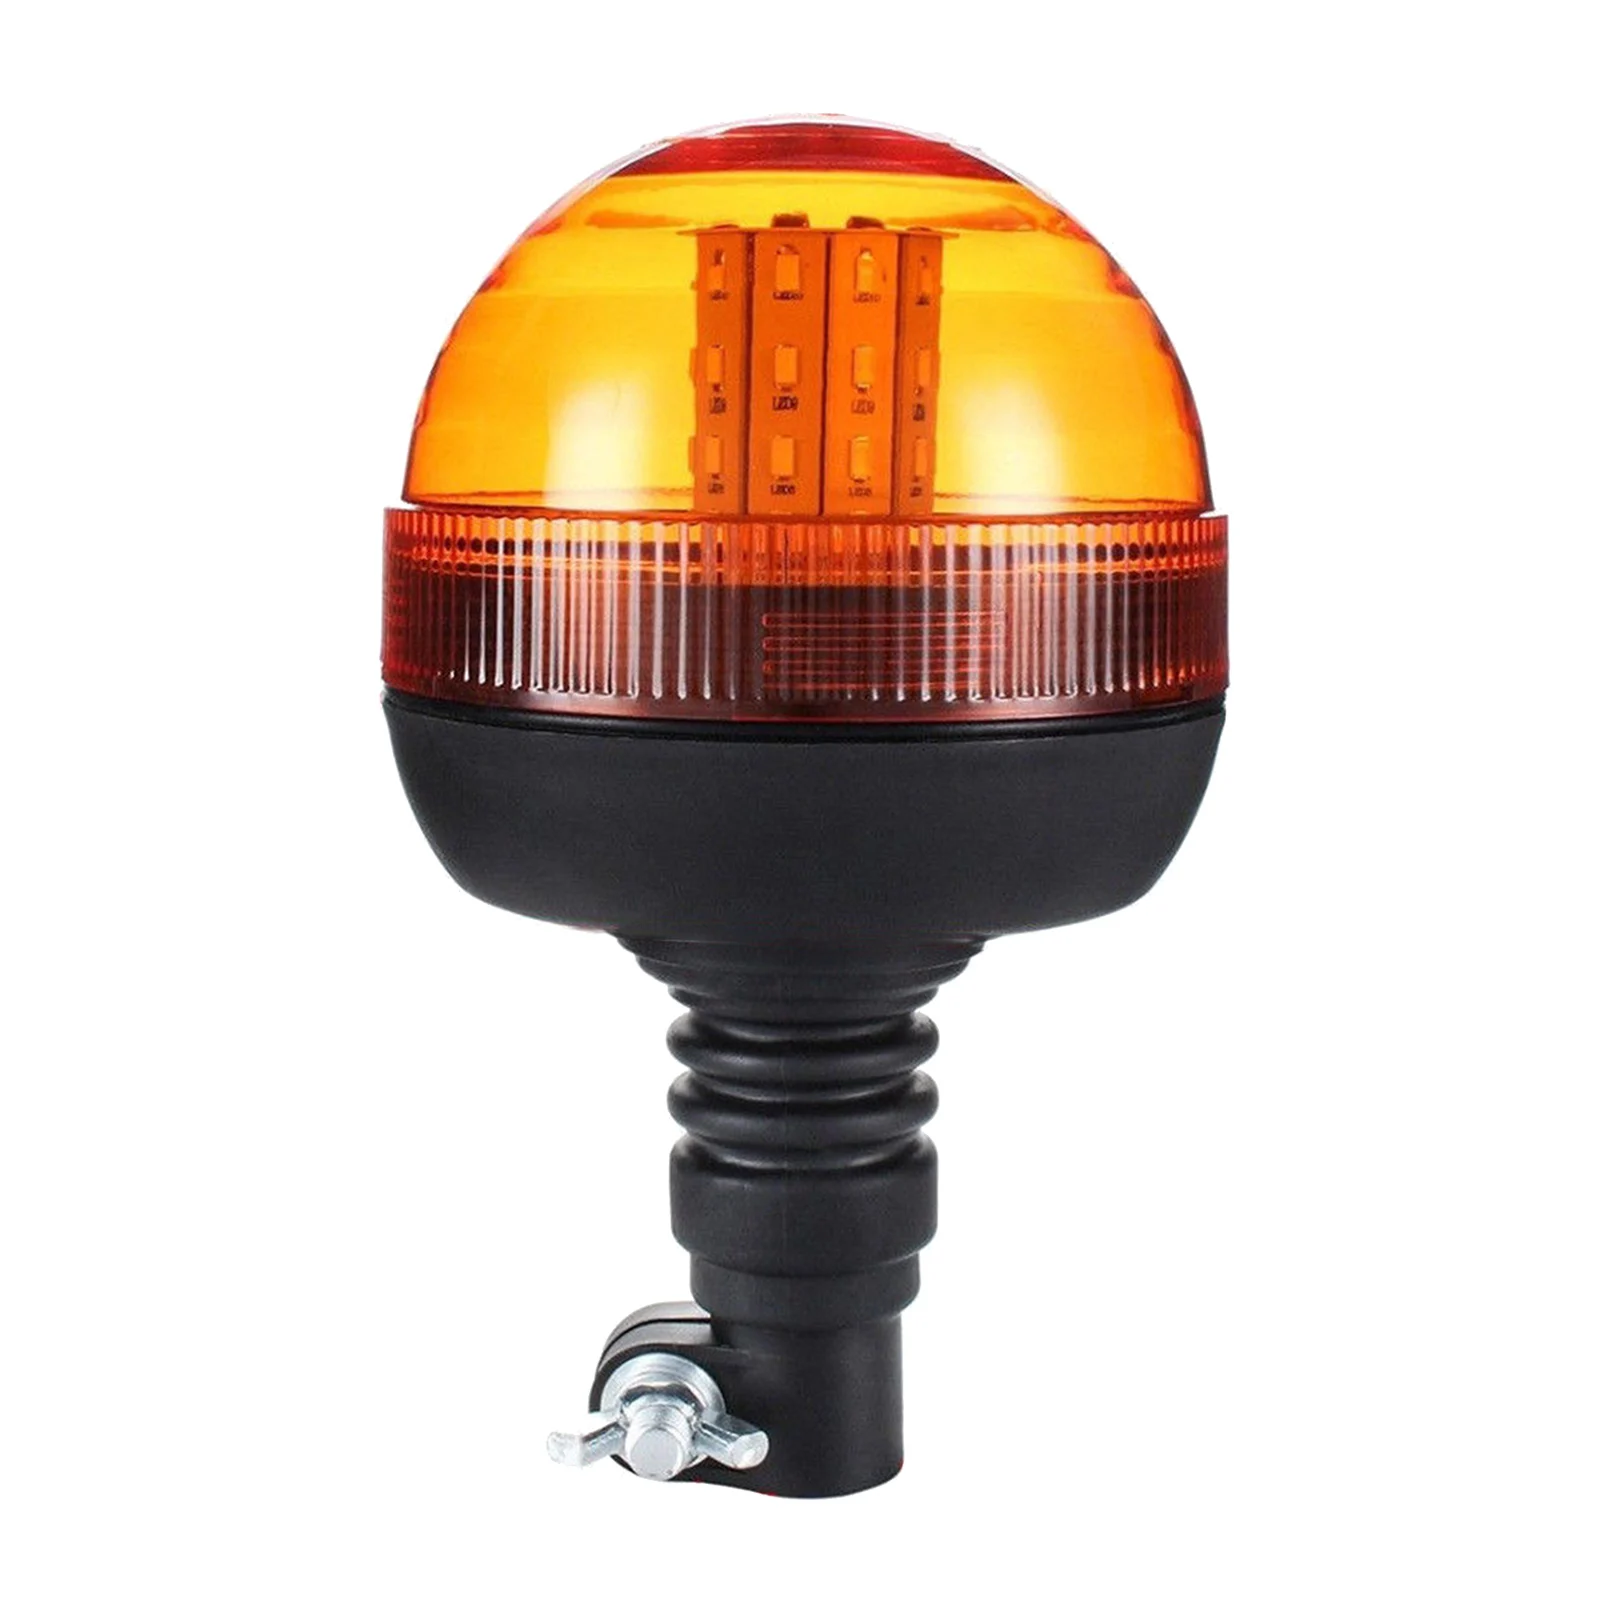 12-24V 40 LED Amber Flashing Warning Light Emergency Beacon Signal Lamp for Car Truck Roof Forklift UTV Golf Carts Trailer Boat